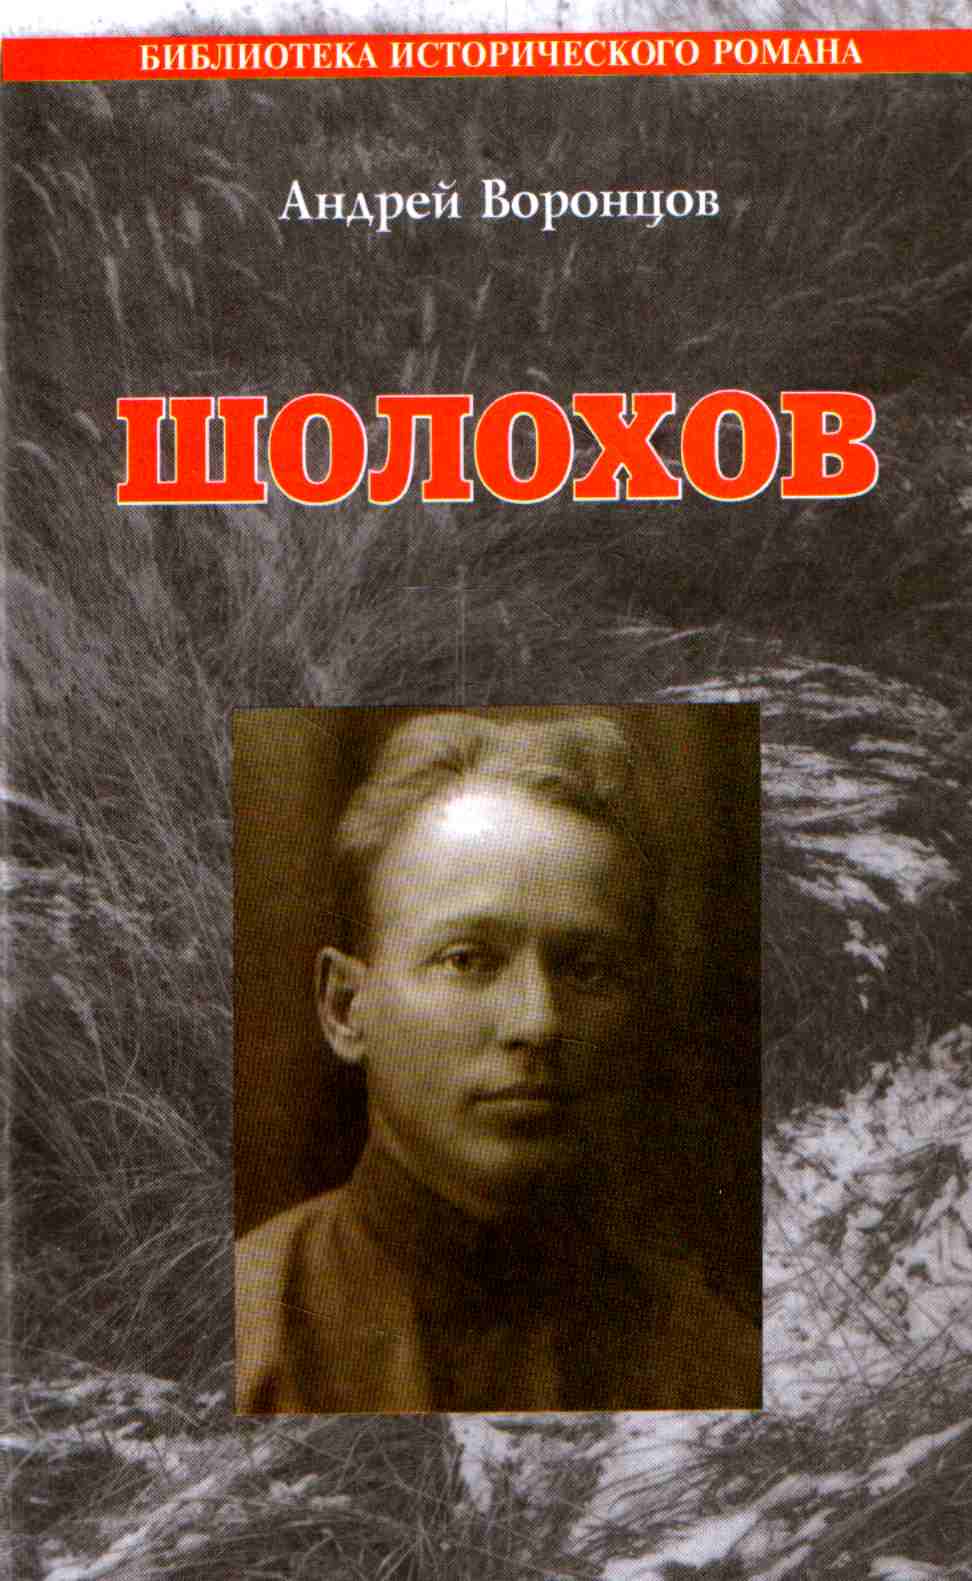 Воронцов Андрей Венедиктович Шолохов: Роман.